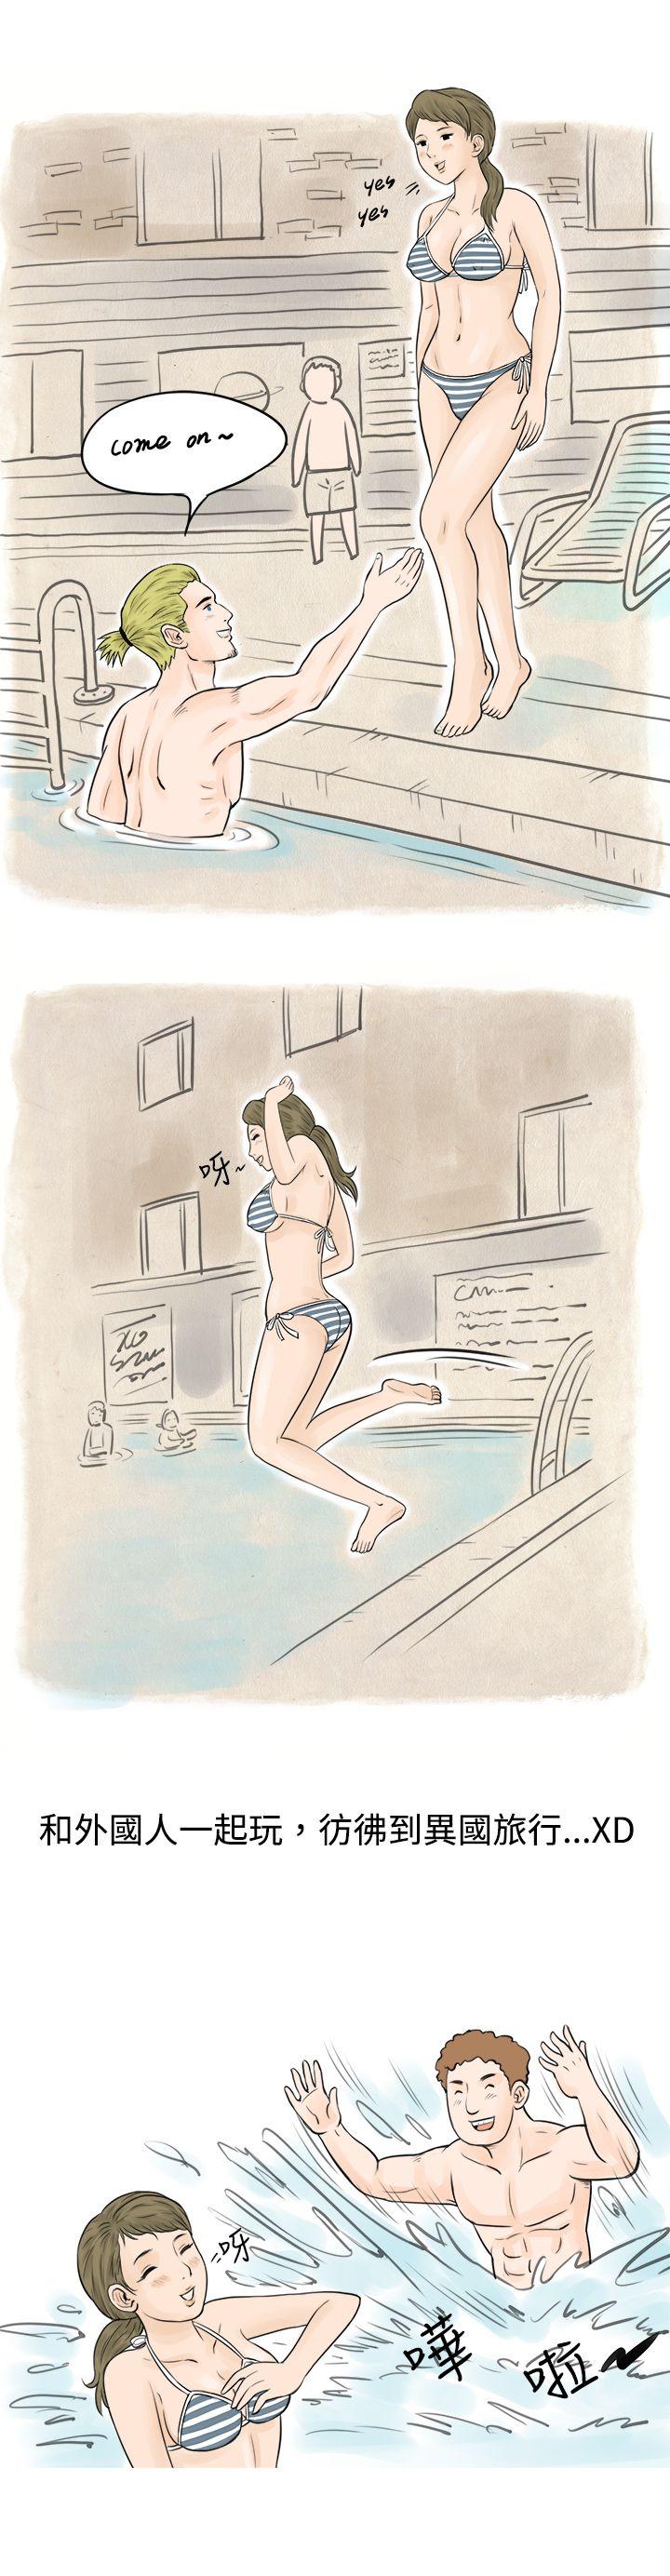 韩国污漫画 秘密Story 在梨泰院游泳池中的小故事(上) 11